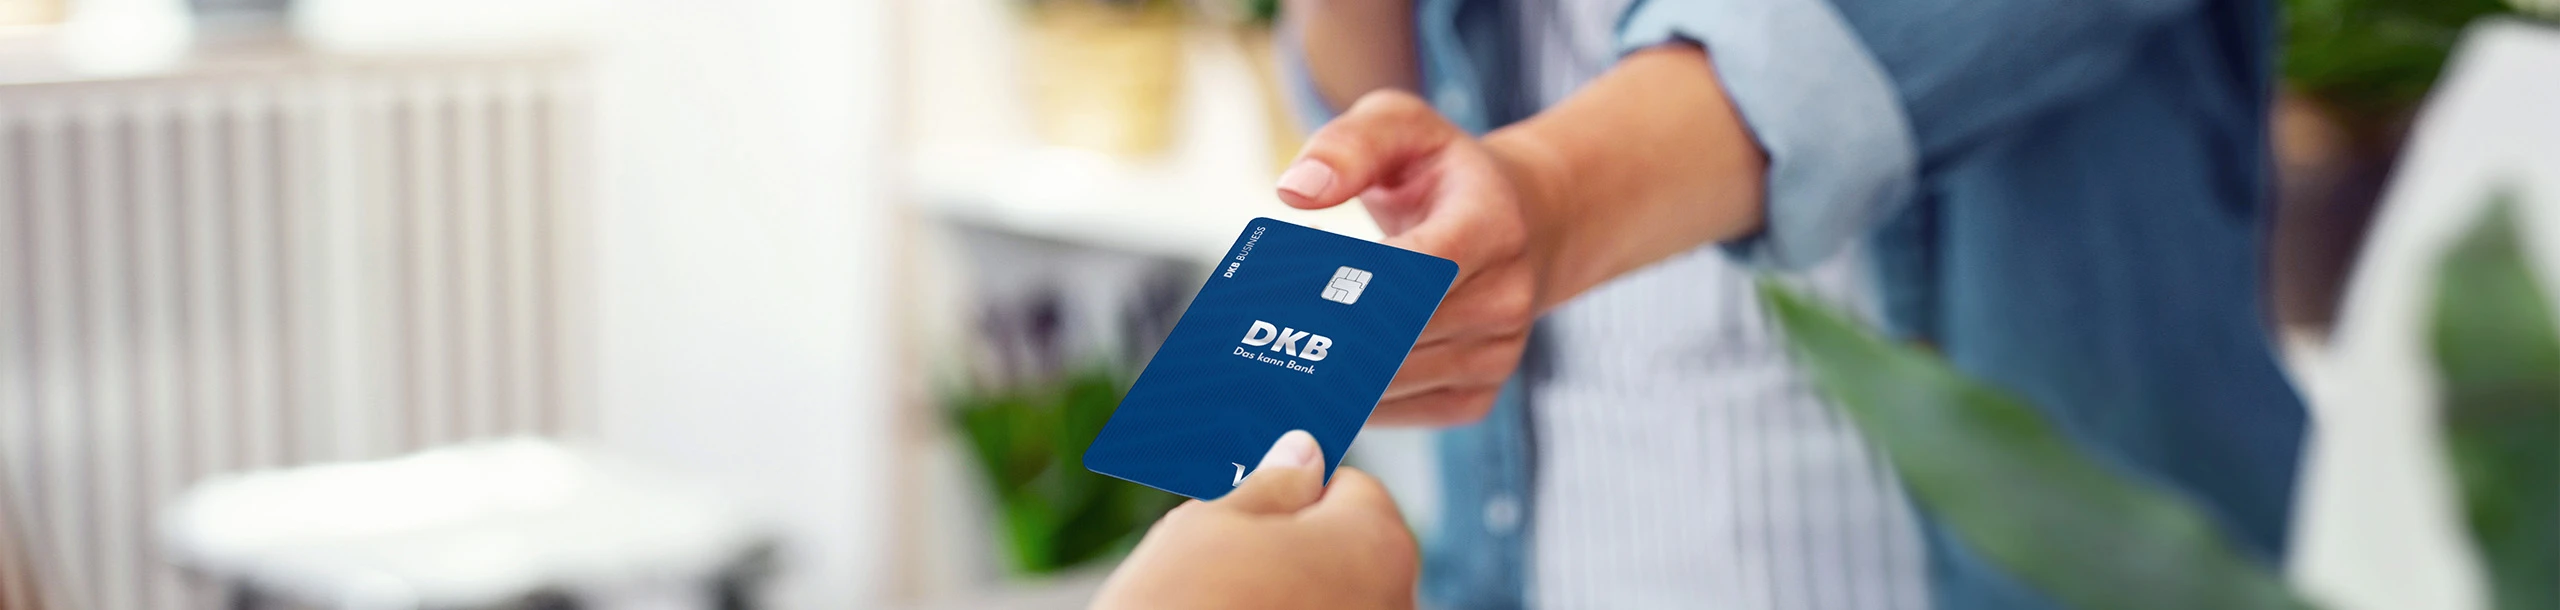 Bezahlvporgang mit der DKB-VISA-Business-Card